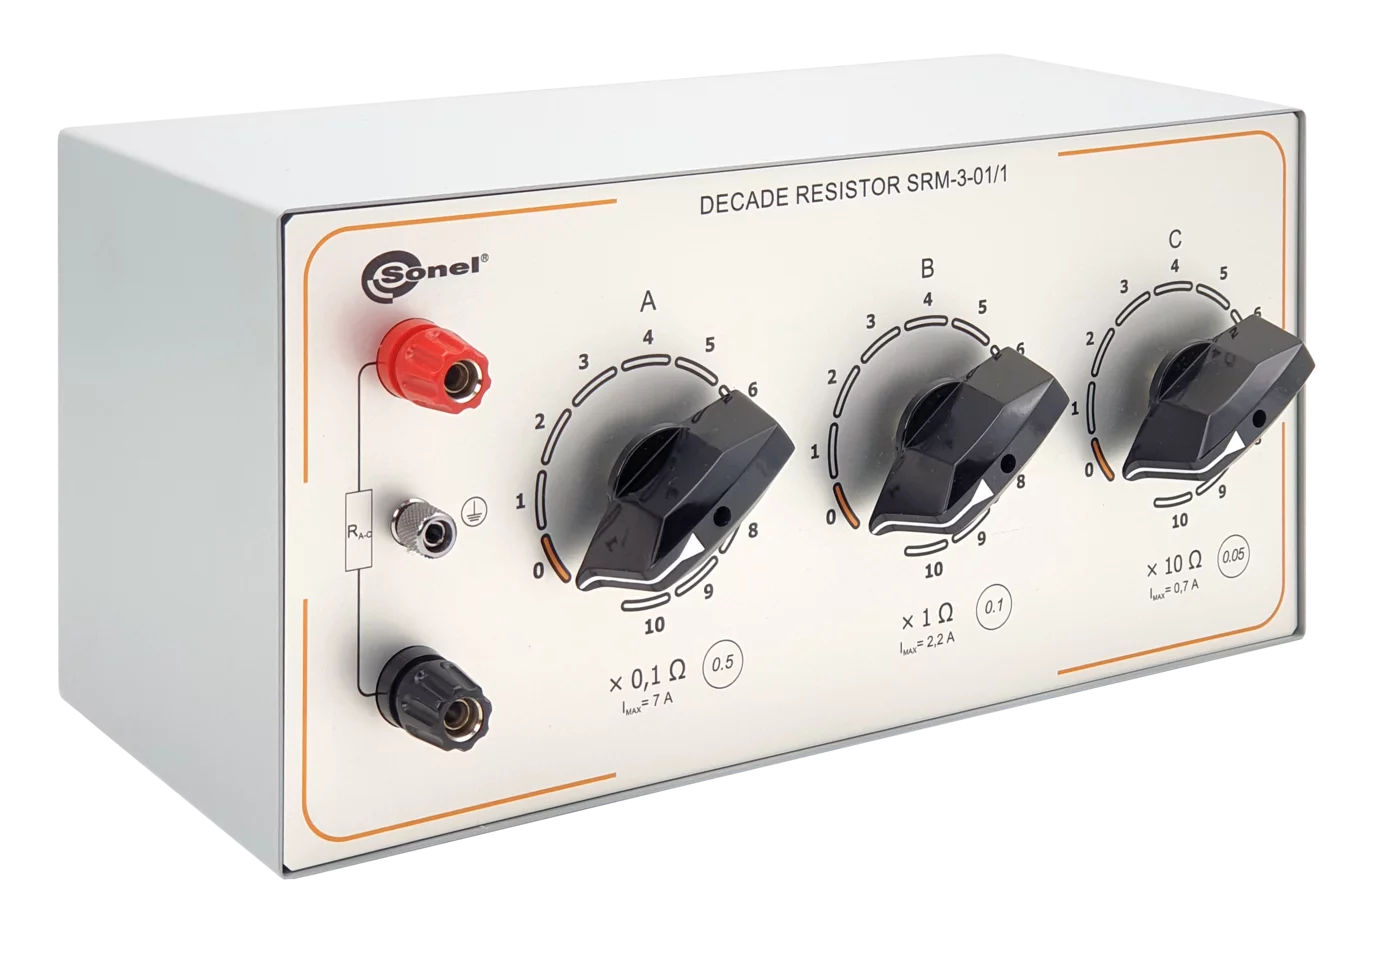 Manual decade resistor SRM-3-01/2 -1